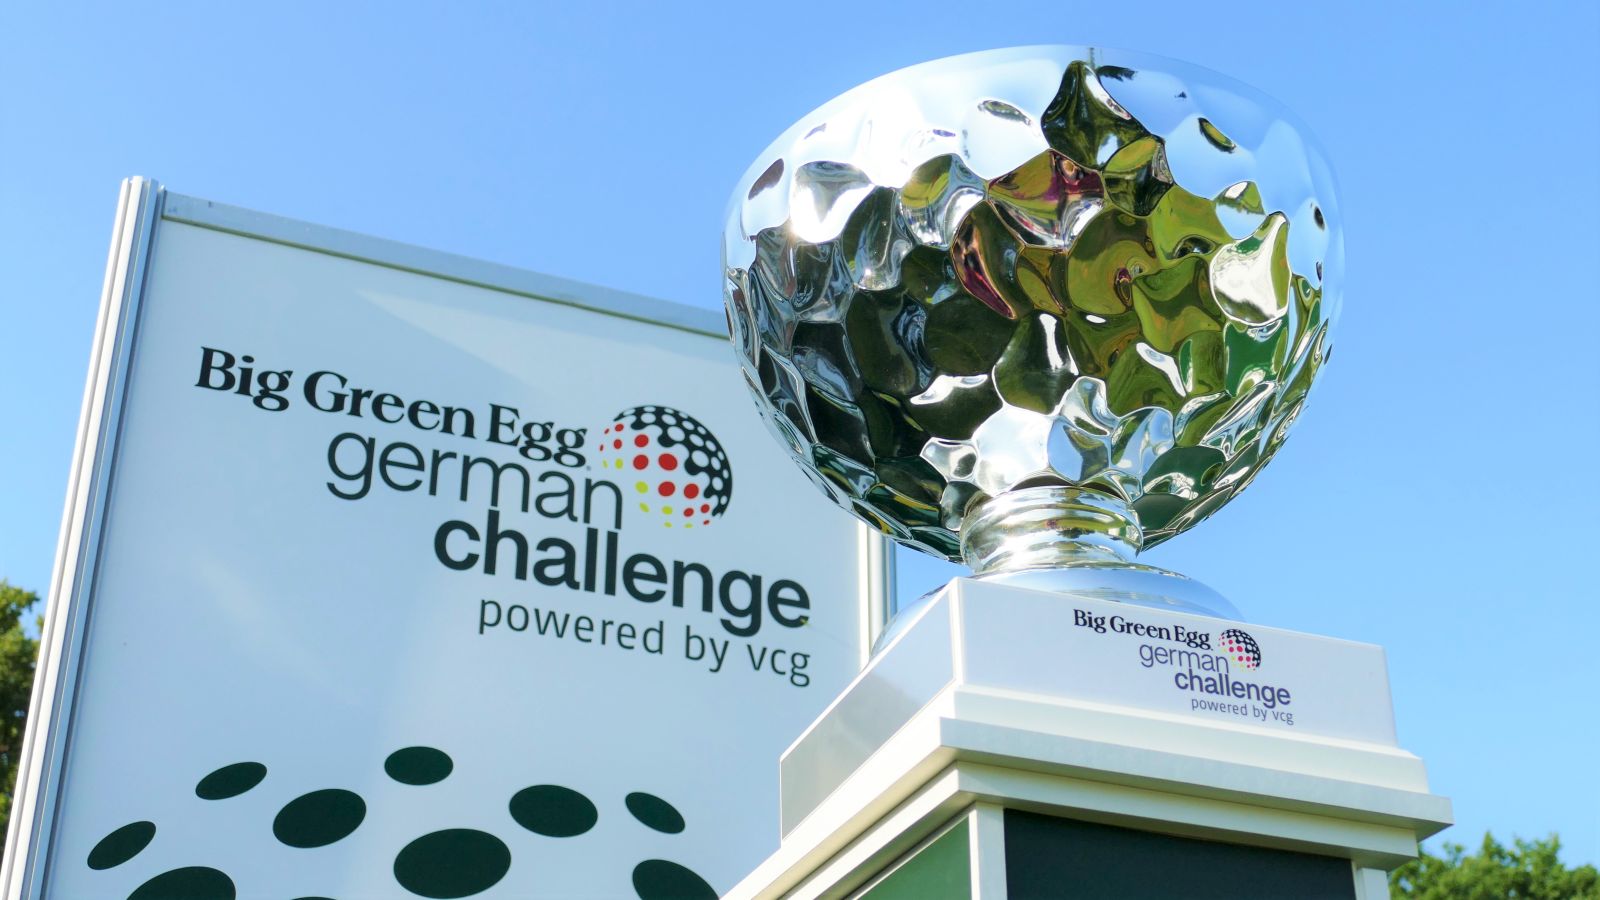 Bei der Big Green Egg German Challenge powered by VcG geht es um diese hübsche Schale. © DGV/Kirmaier